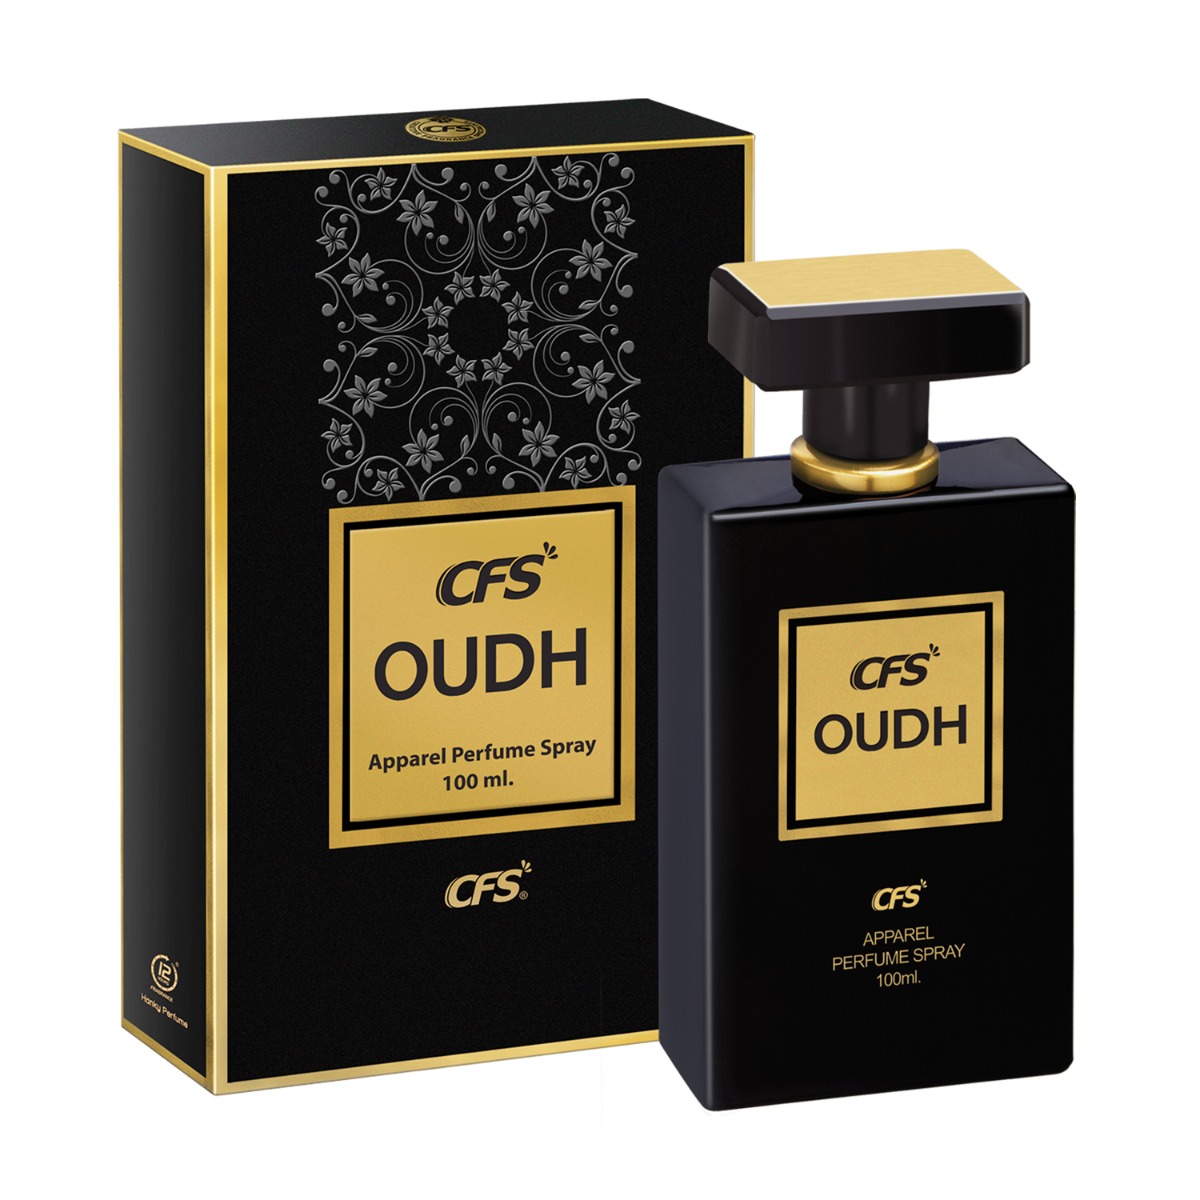 CFS Oudh Black Long Lasting Apparel Perfume Spray, 100ml